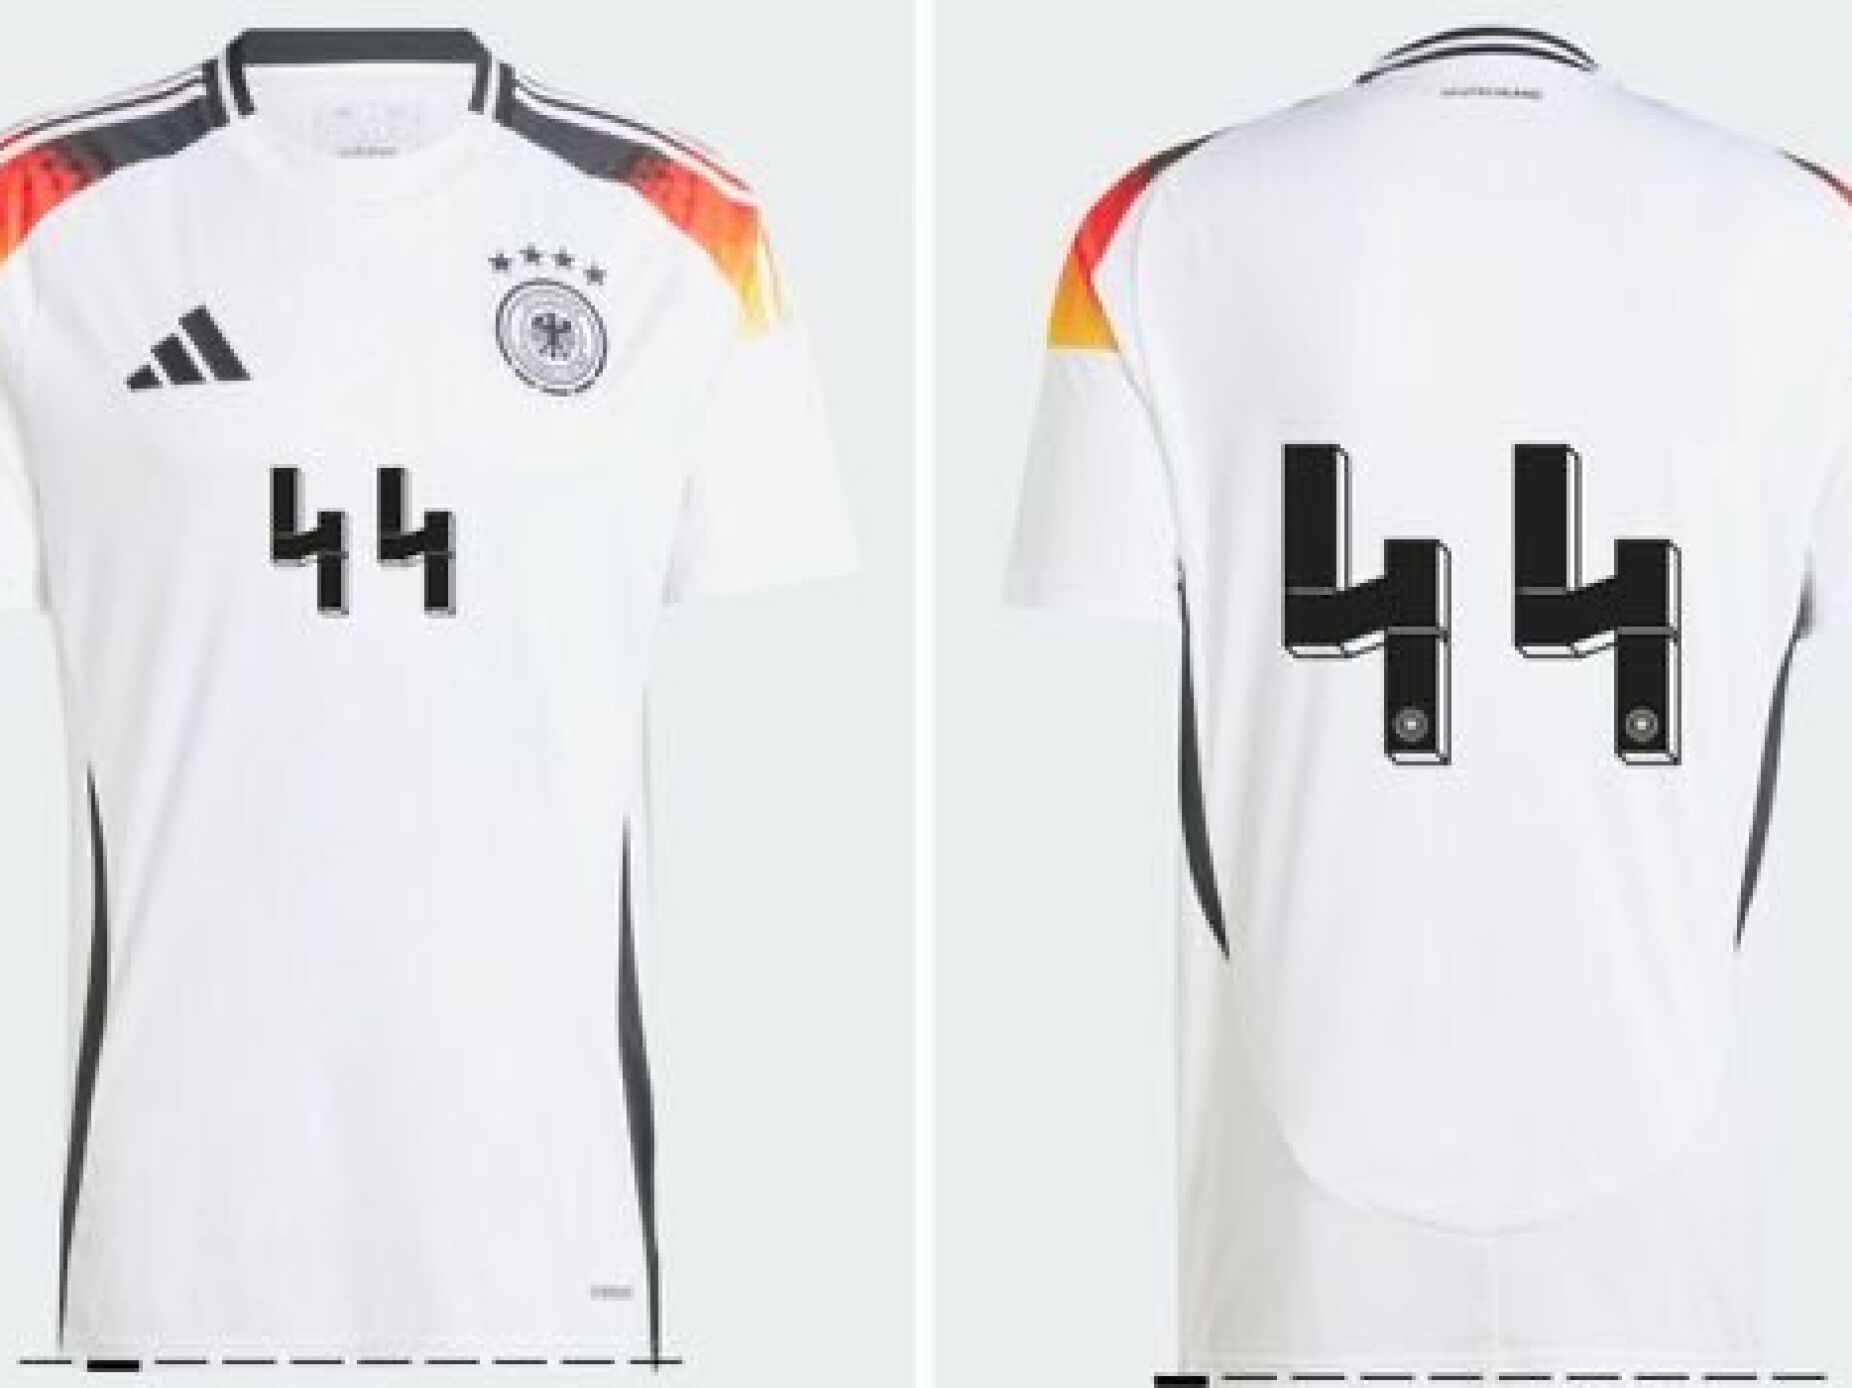 Alemanha muda design das camisolas por o número 44 lembrar as SS ligadas ao regime nazi